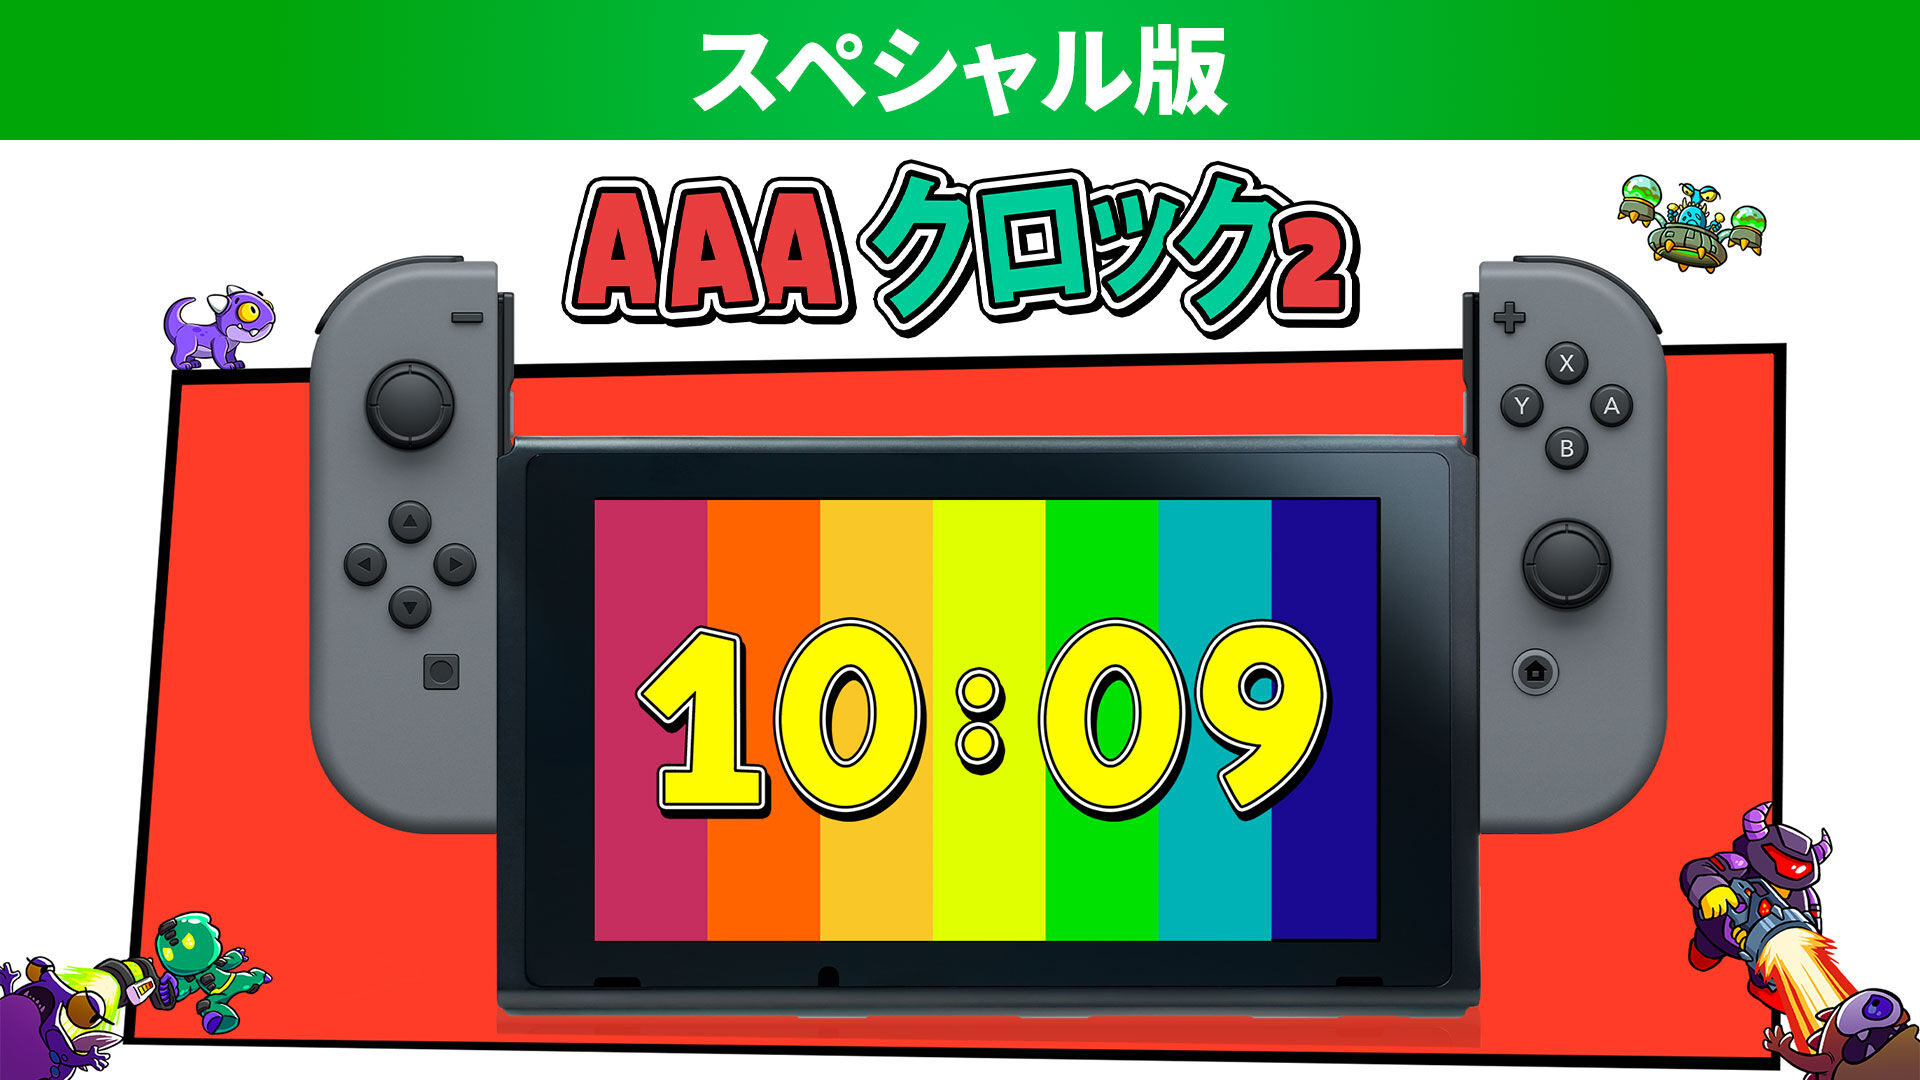 AAAクロック 2 スペシャル版 ダウンロード版 | My Nintendo Store ...